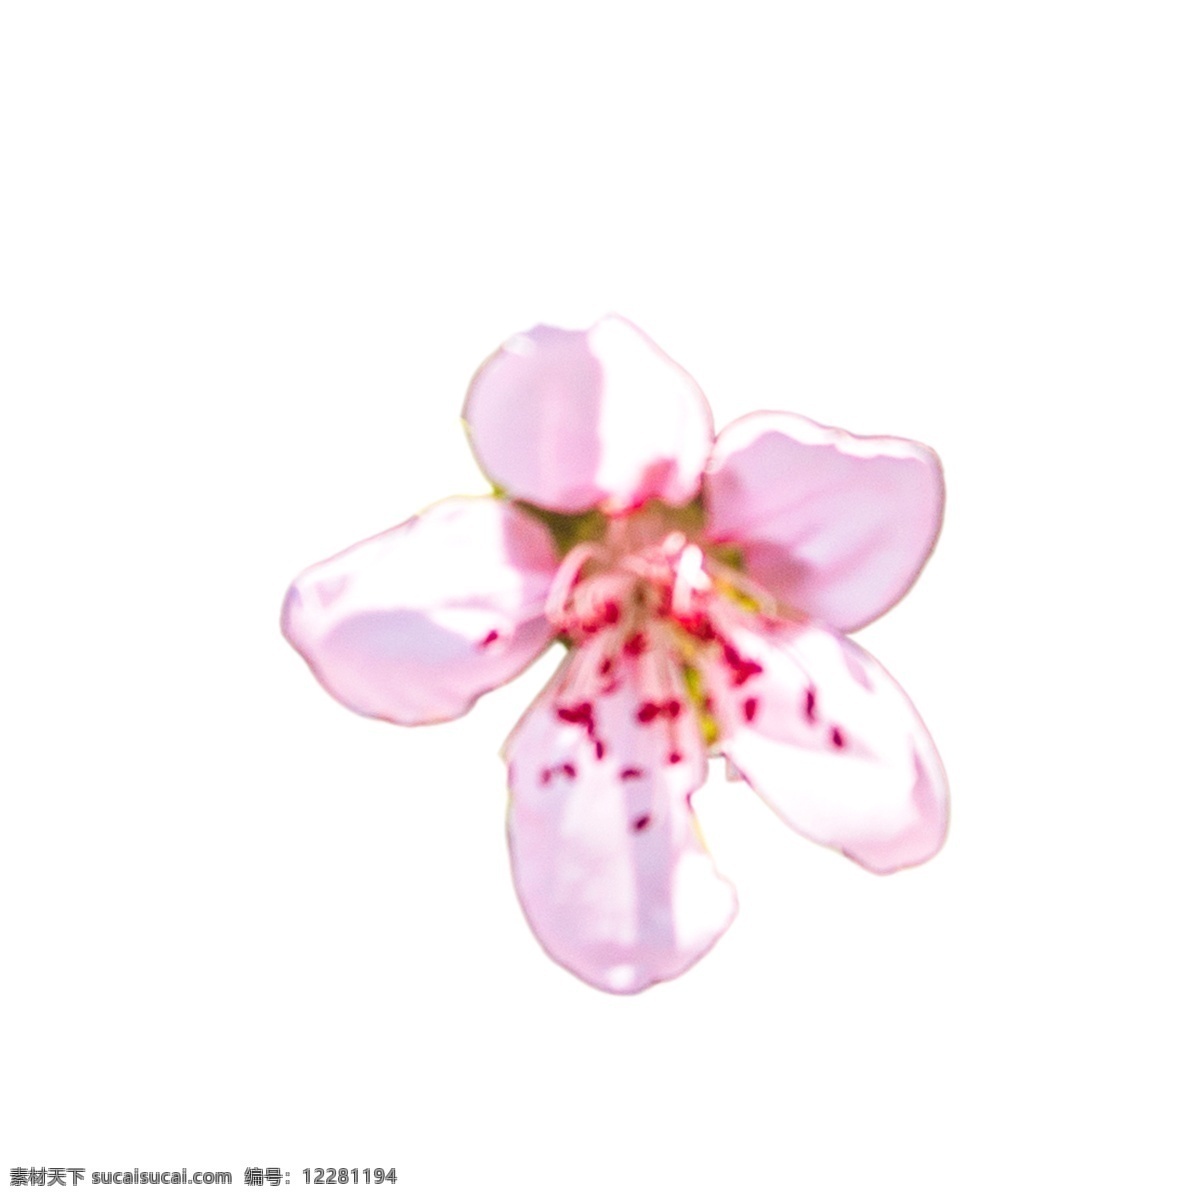 美丽 粉色 花朵 美丽花朵 粉色鲜花 鲜花花蕊 卡通插图 创意卡通下载 插图 png图下载